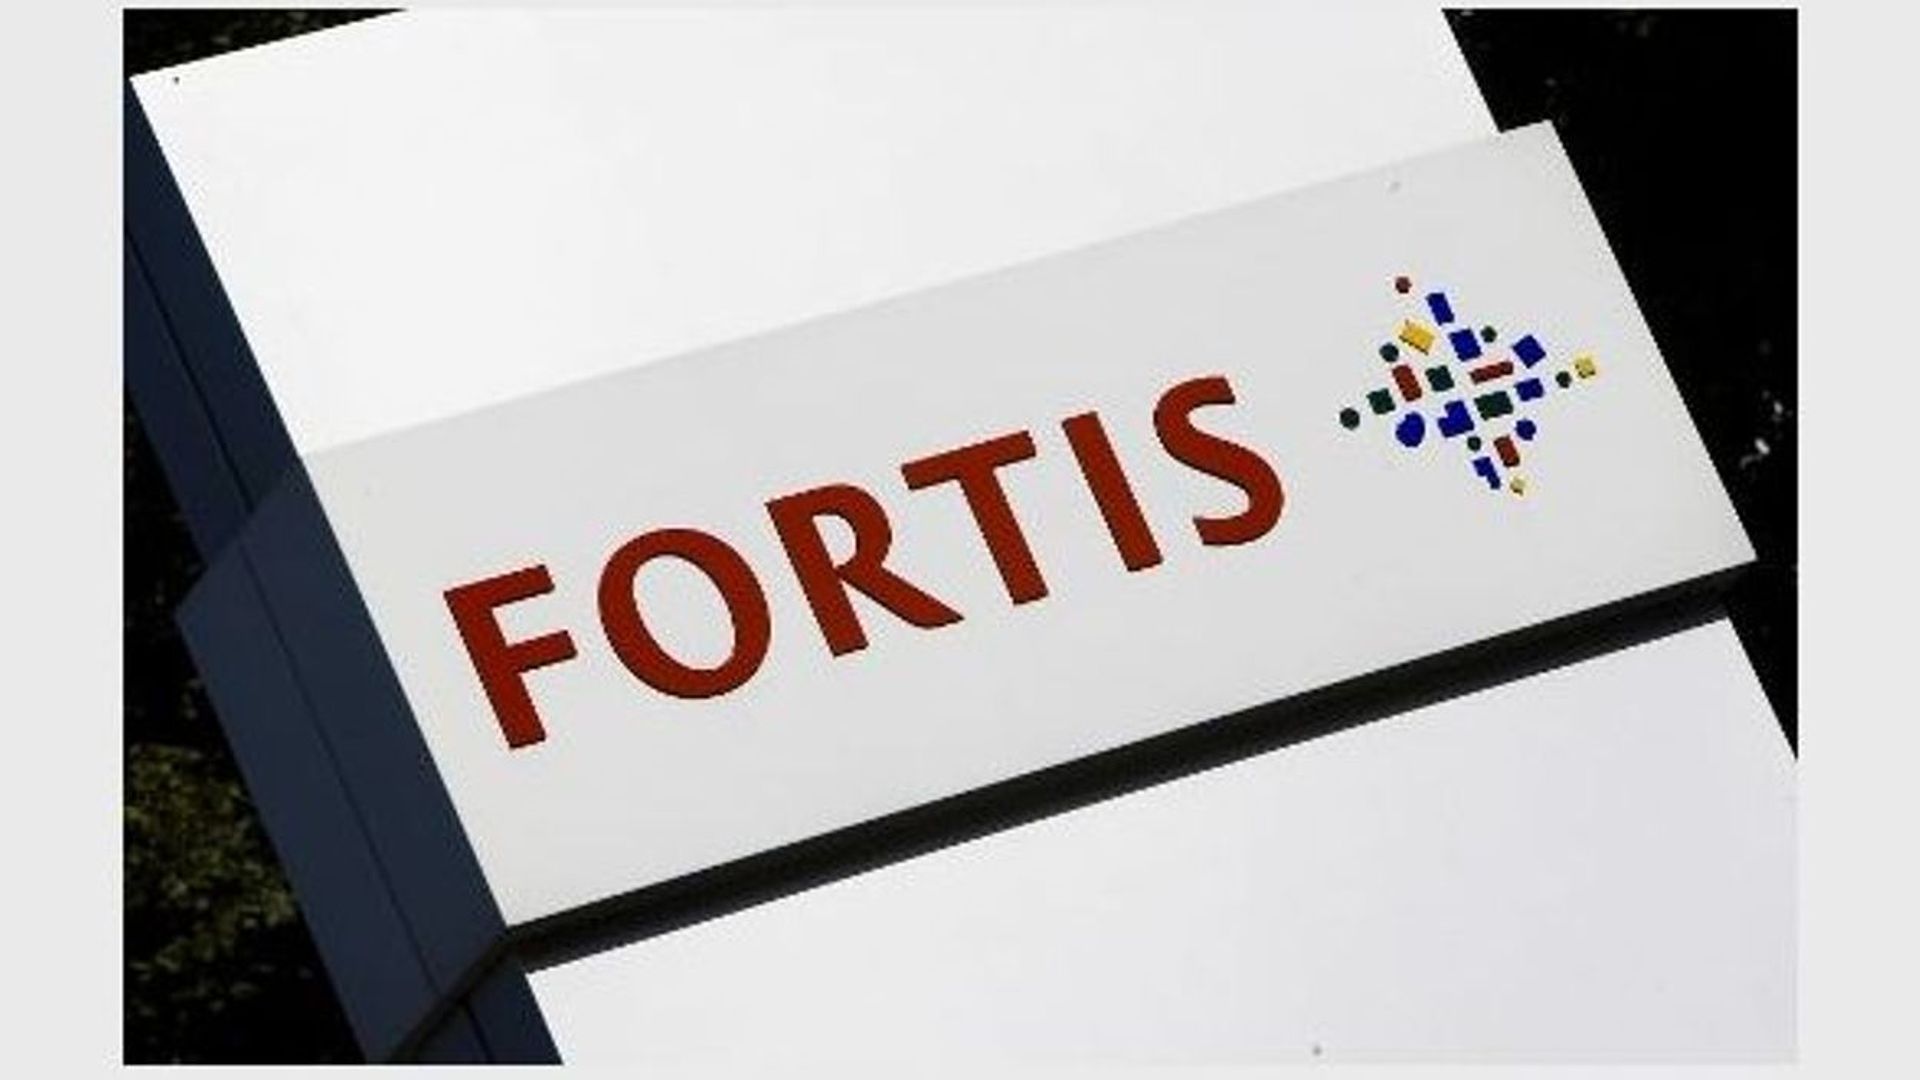 Le dossier Fortis est prescrit, juge la chambre du conseil de Bruxelles